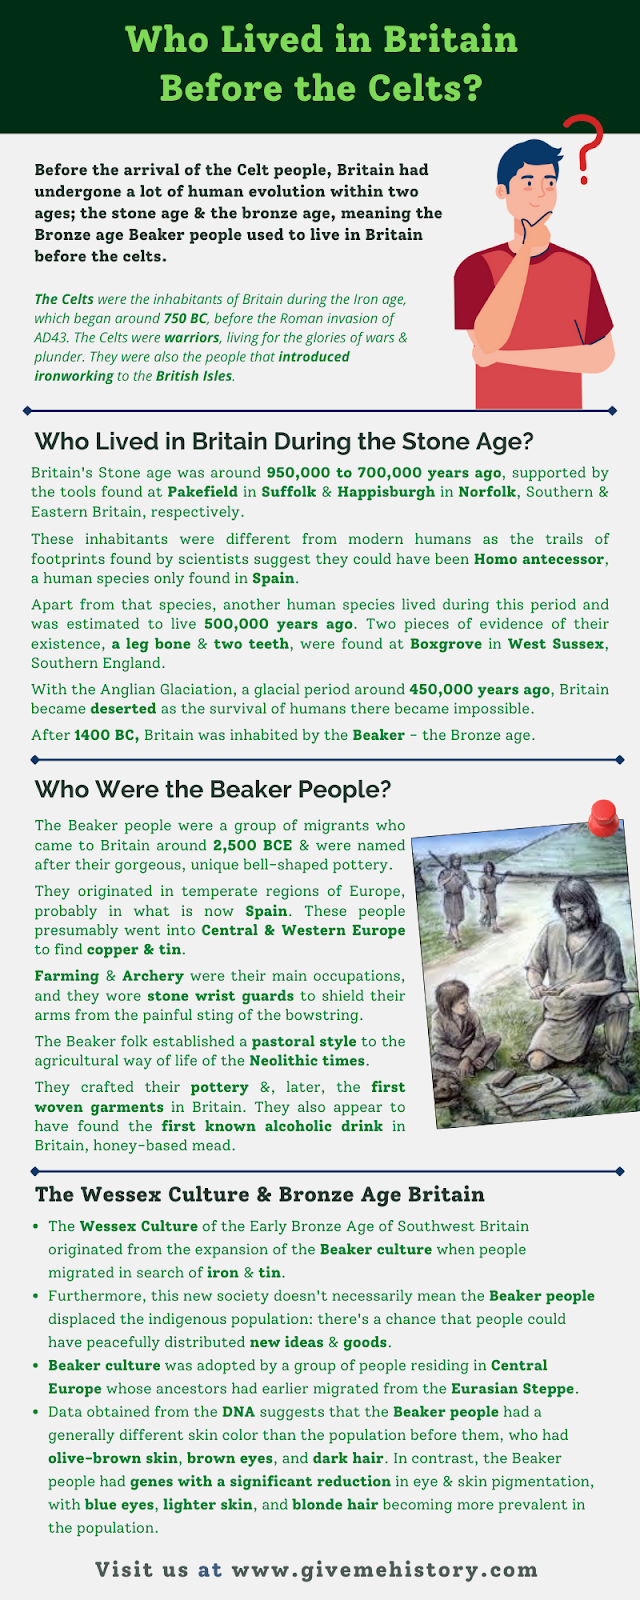 Vilka levde i Storbritannien före kelterna?